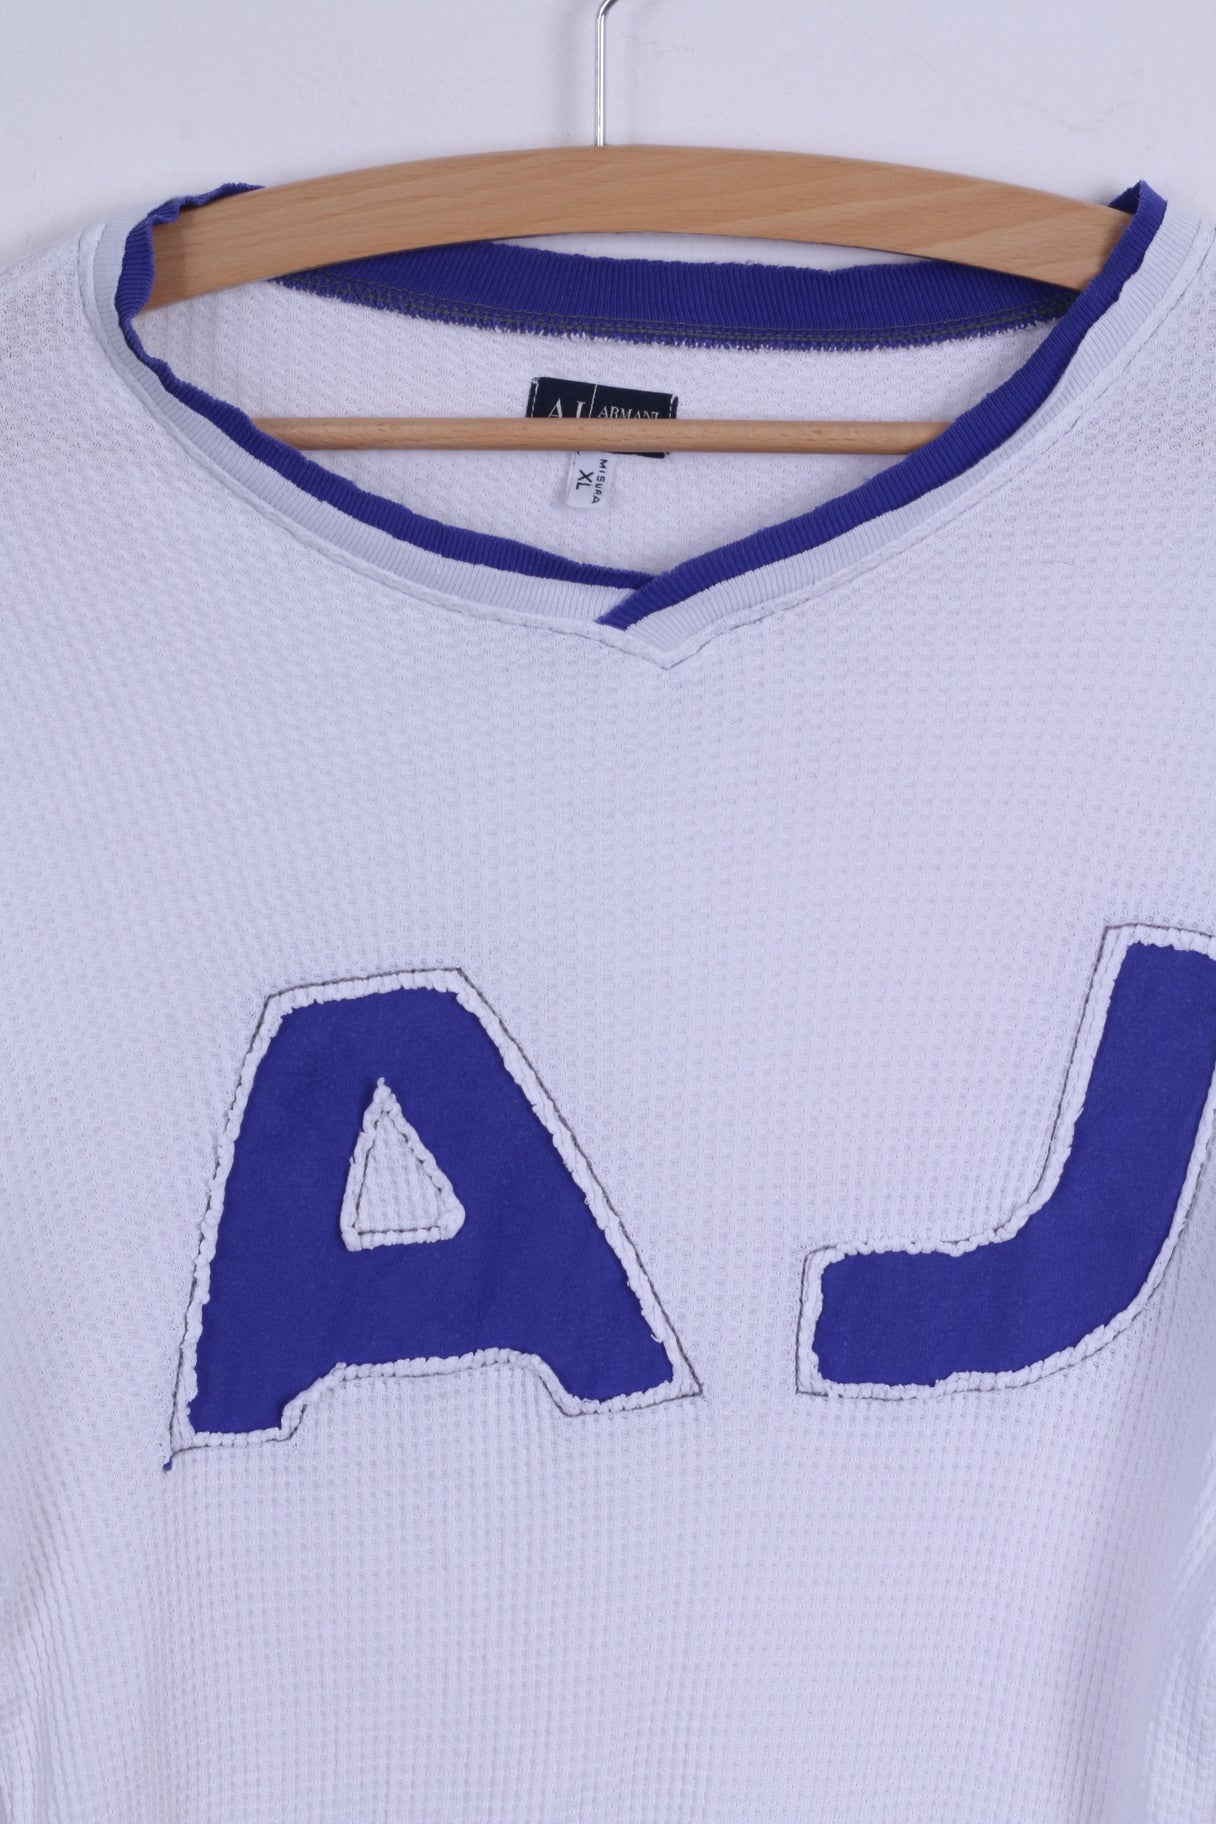 Armani Jeans Chemise XL pour homme Blanc à manches longues en coton stretch ajusté AJ